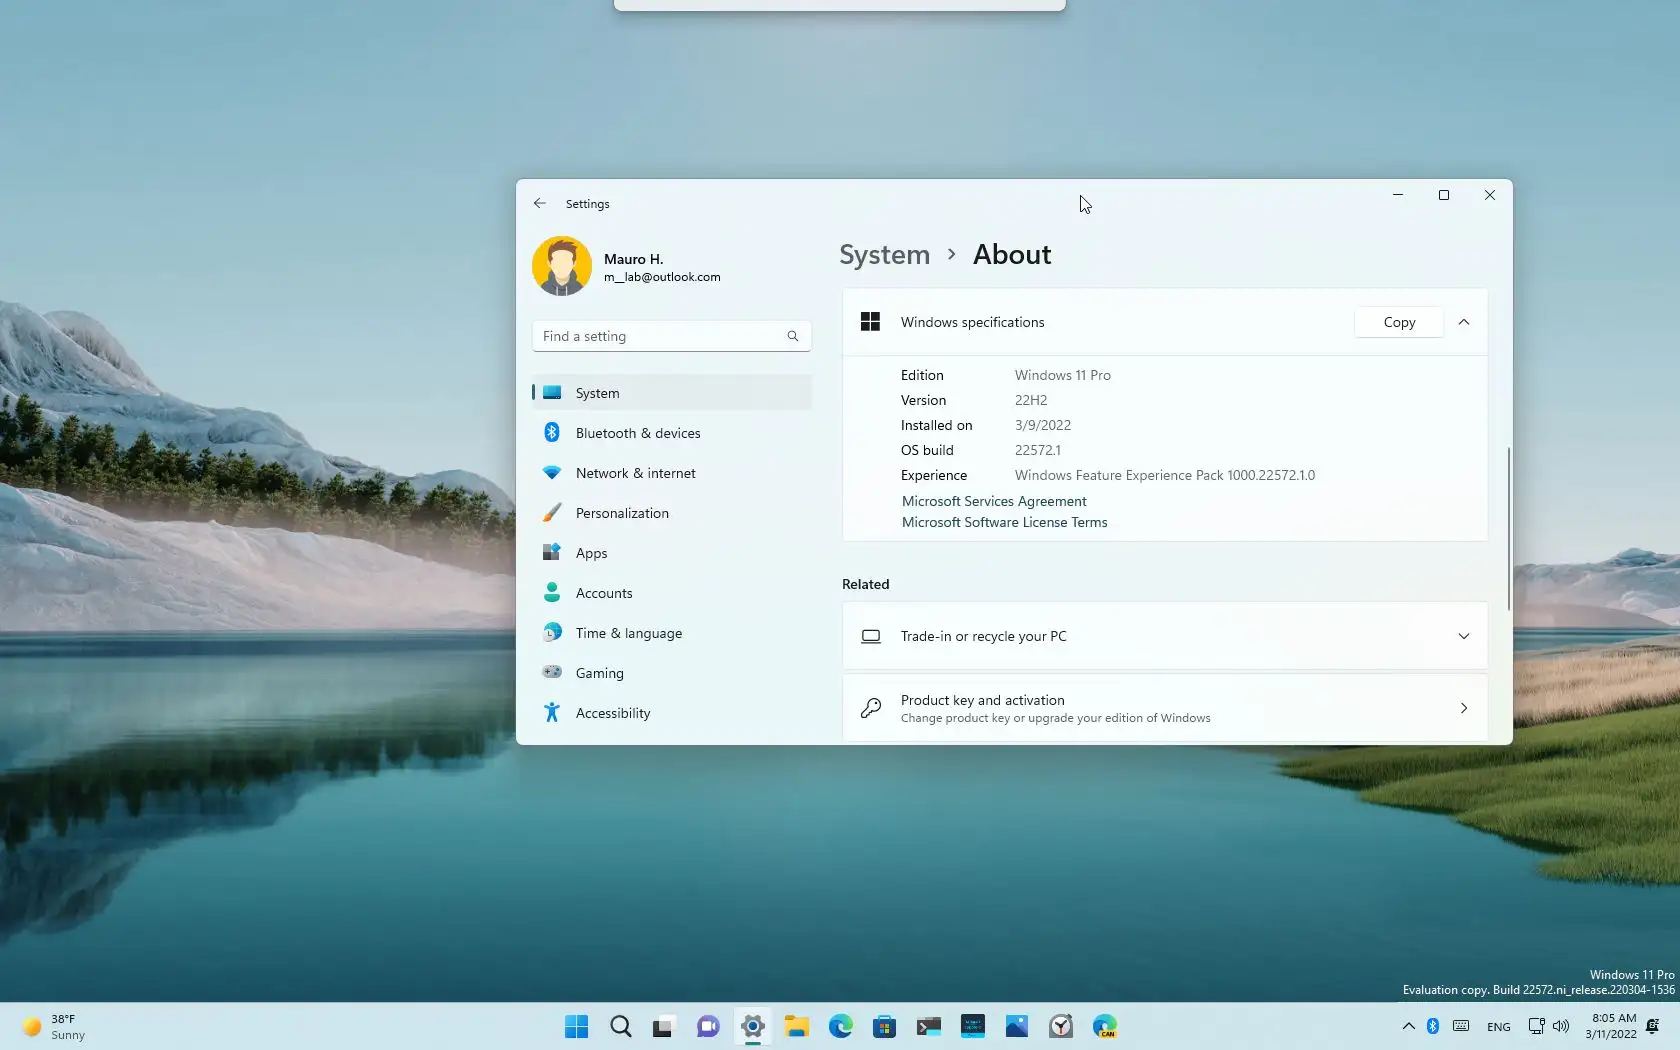 Windows 11 forhåndsvisning bekrefter versjon 22H2